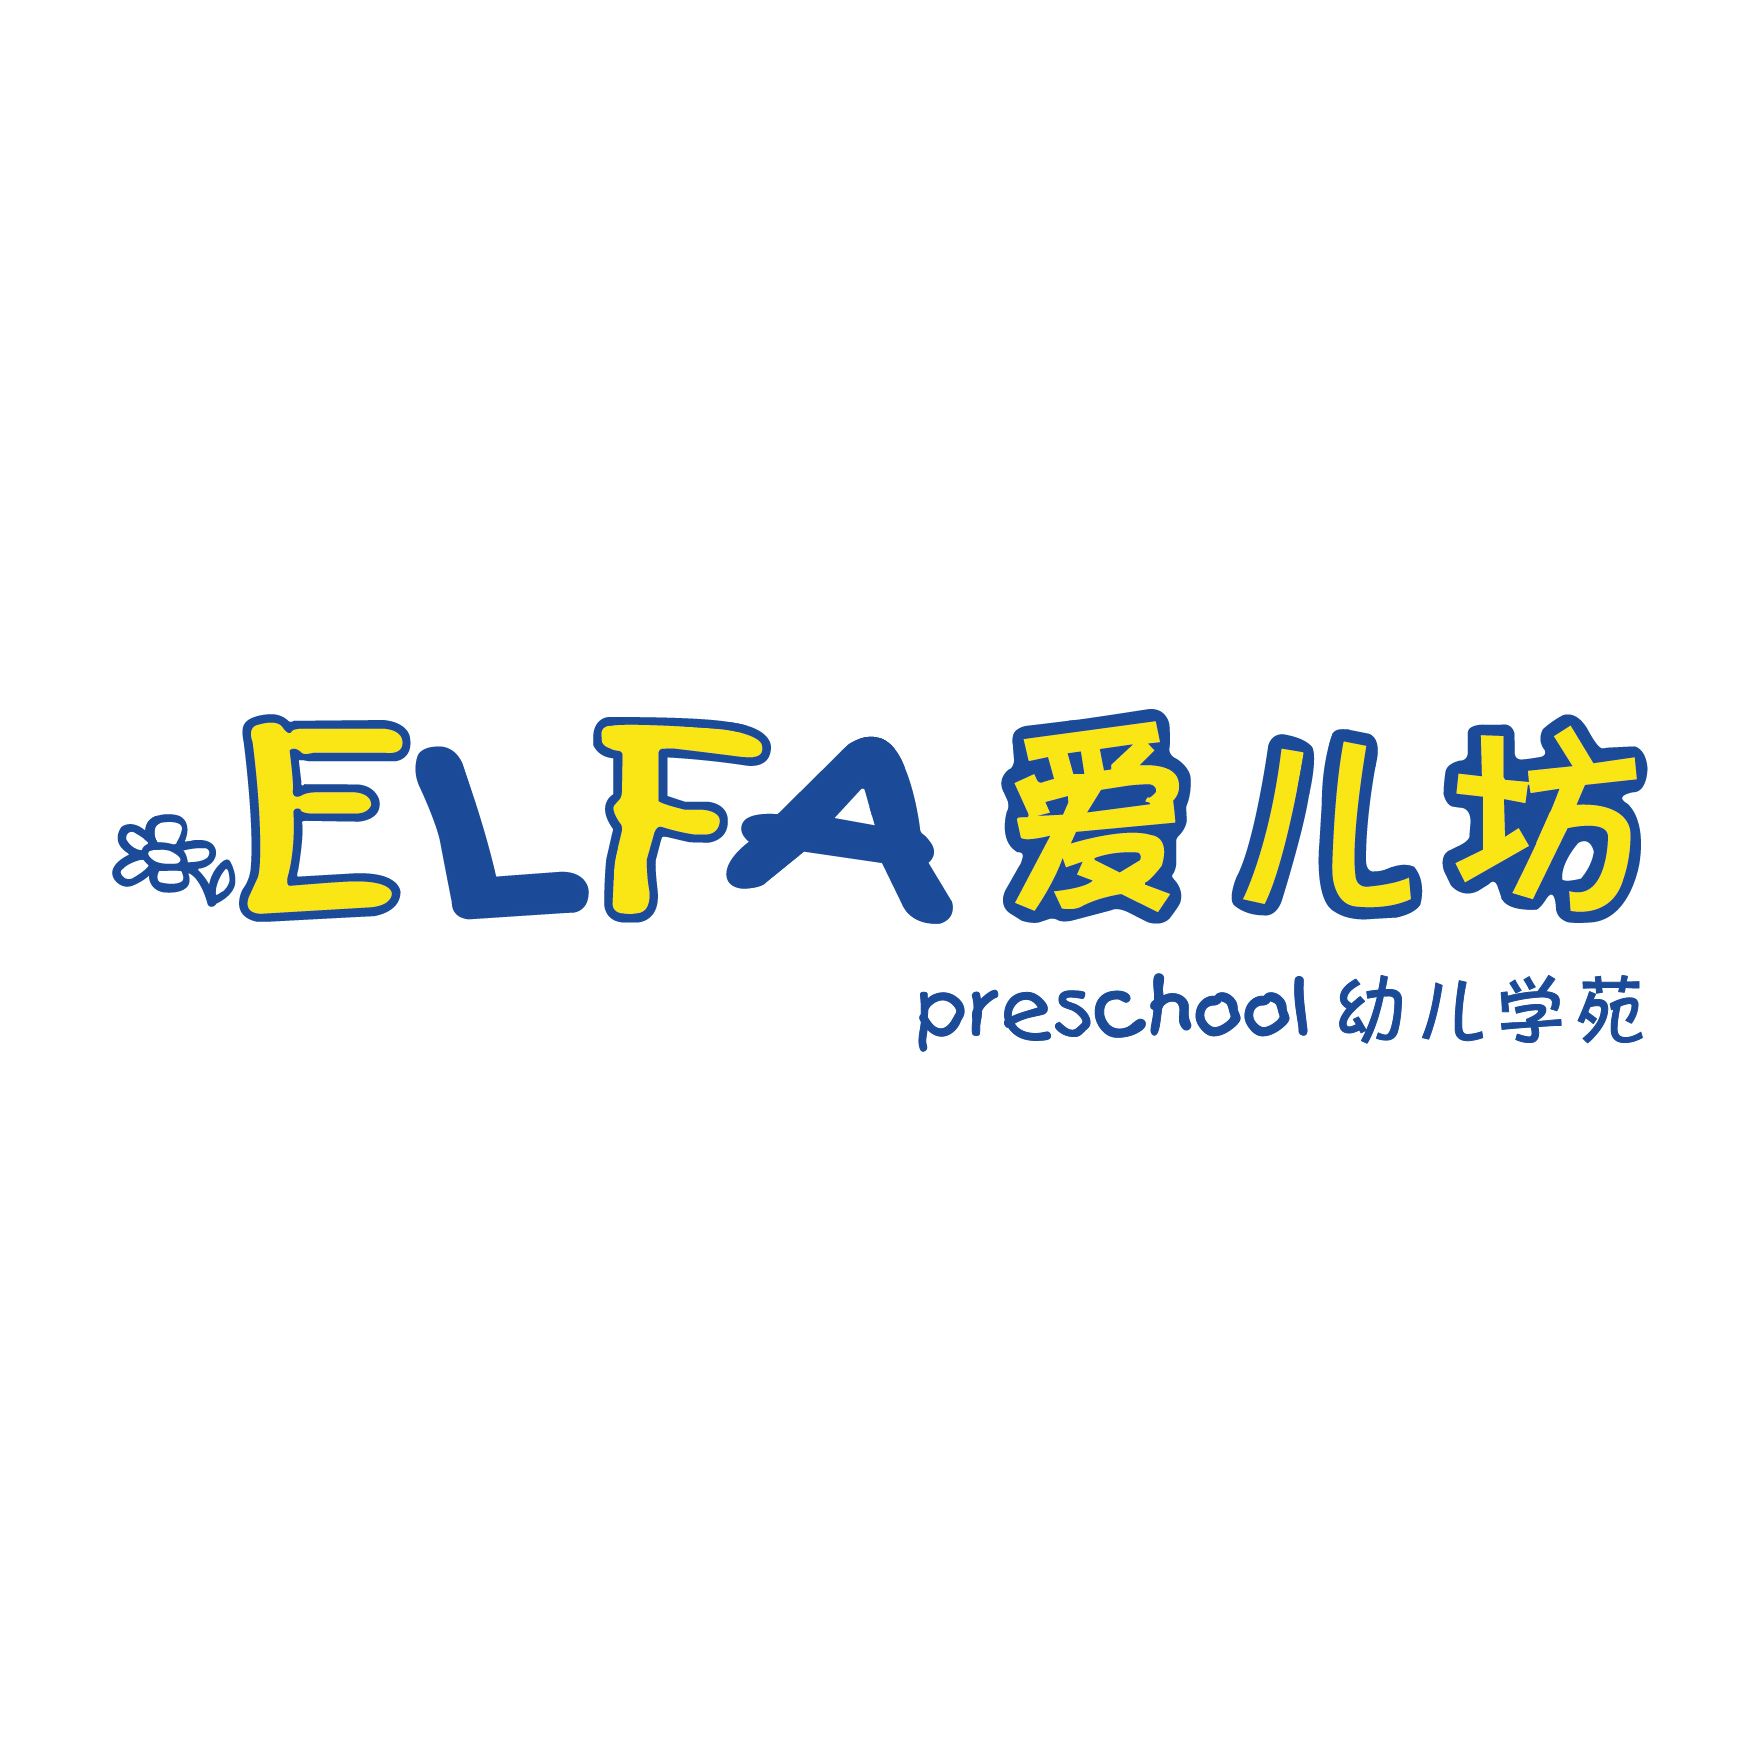 ELFA Preschool @ Jurong